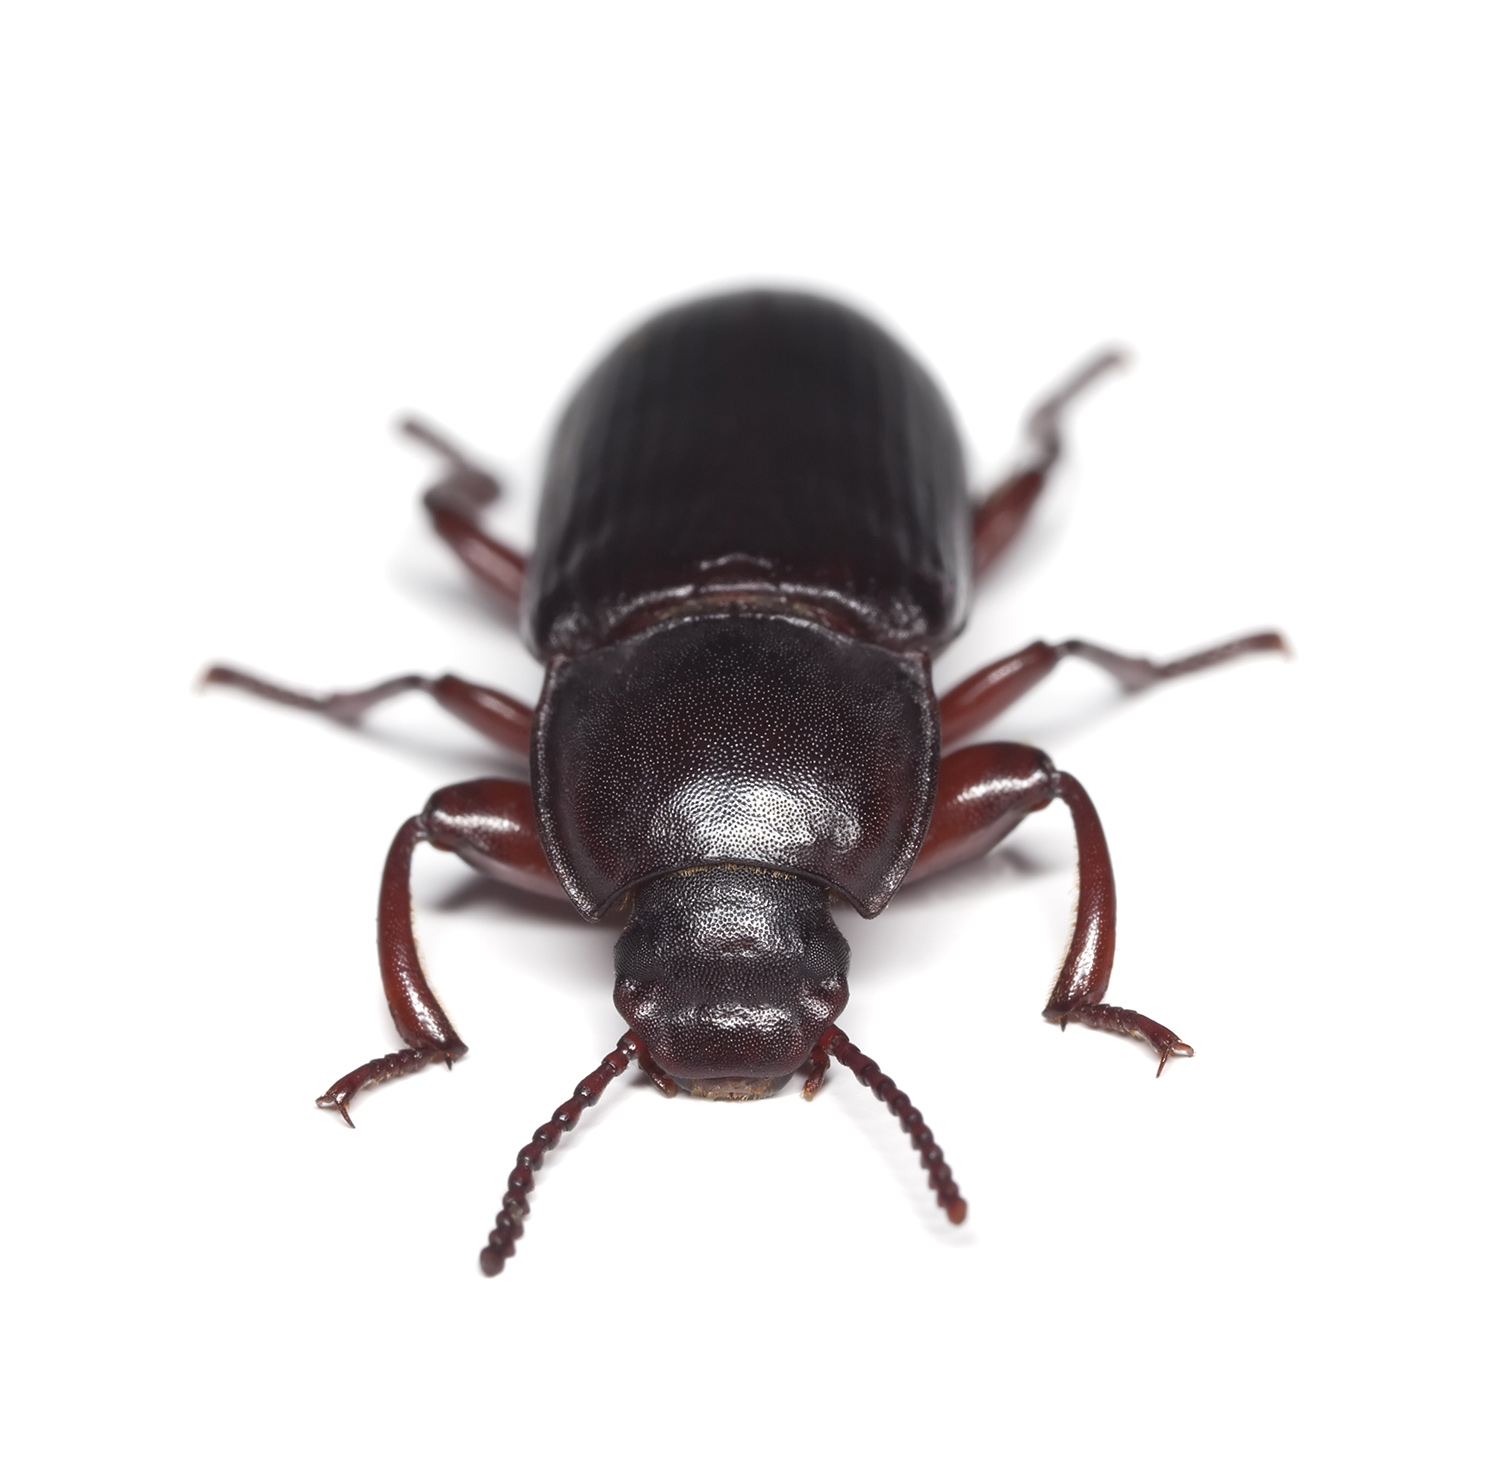 pantry beetle